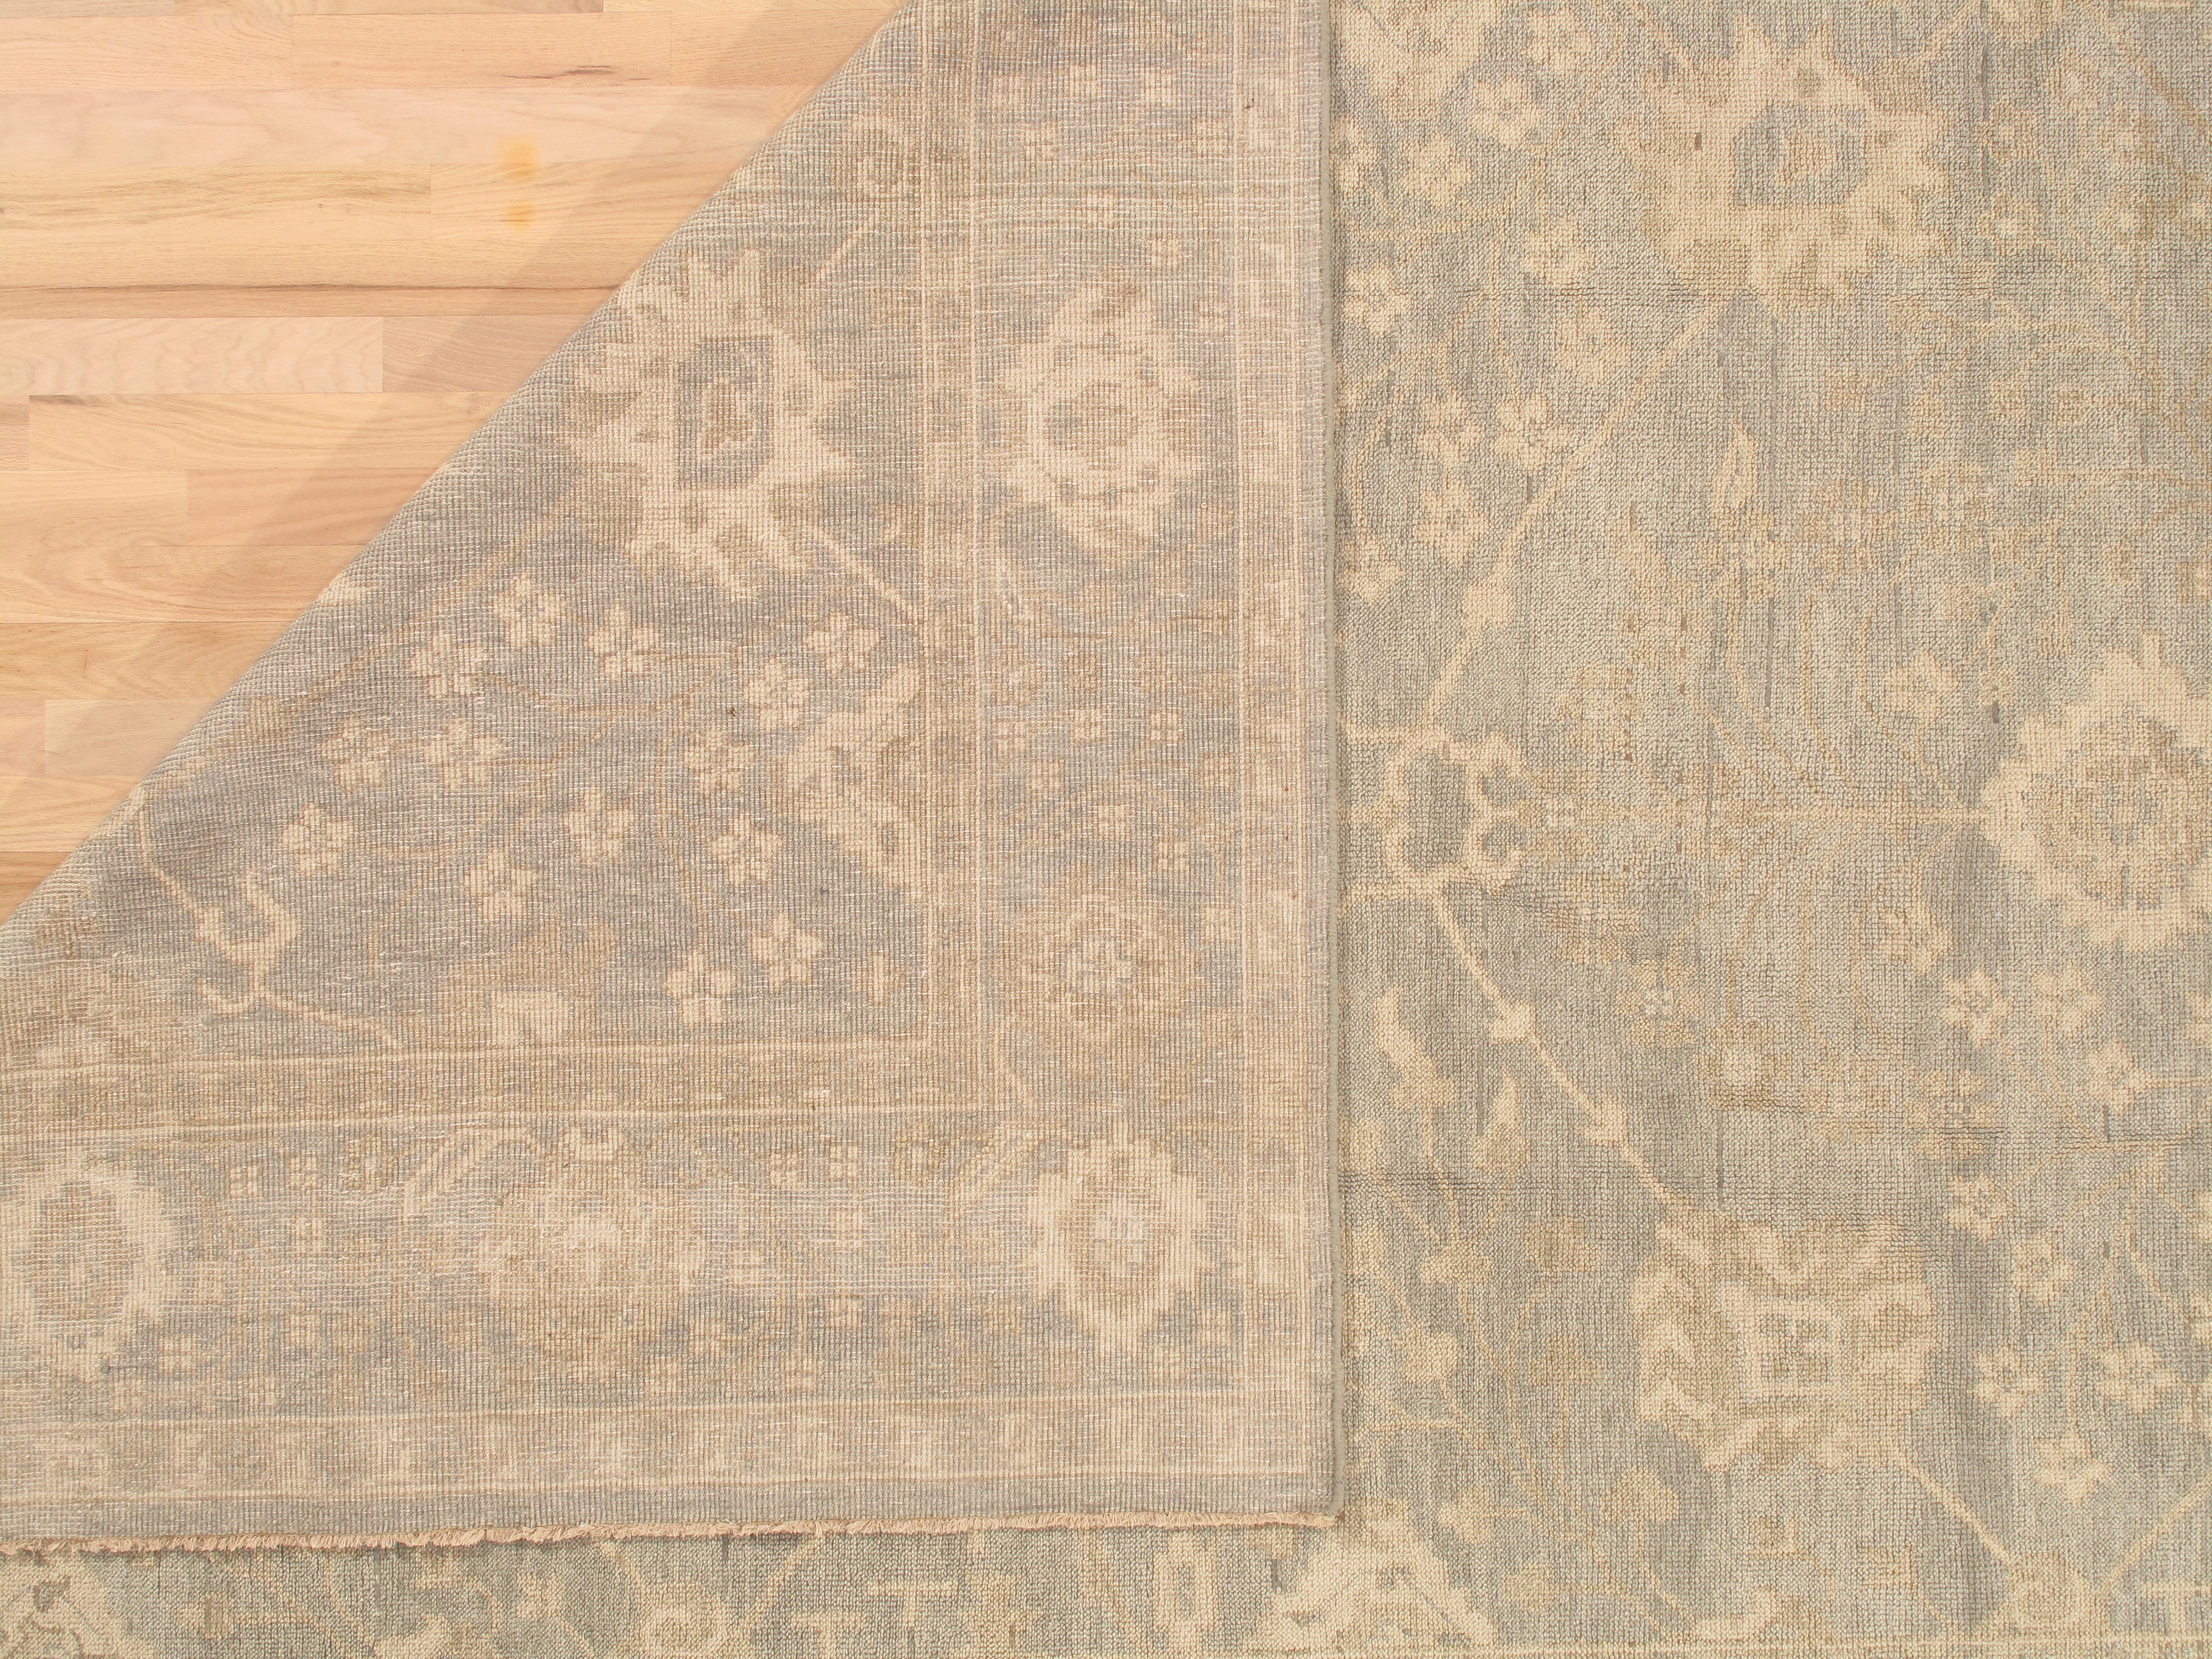 Vintage Oushak Carpet, Oriental Rug, Handmade Green Grey, Ivory, Saffron For Sale 2